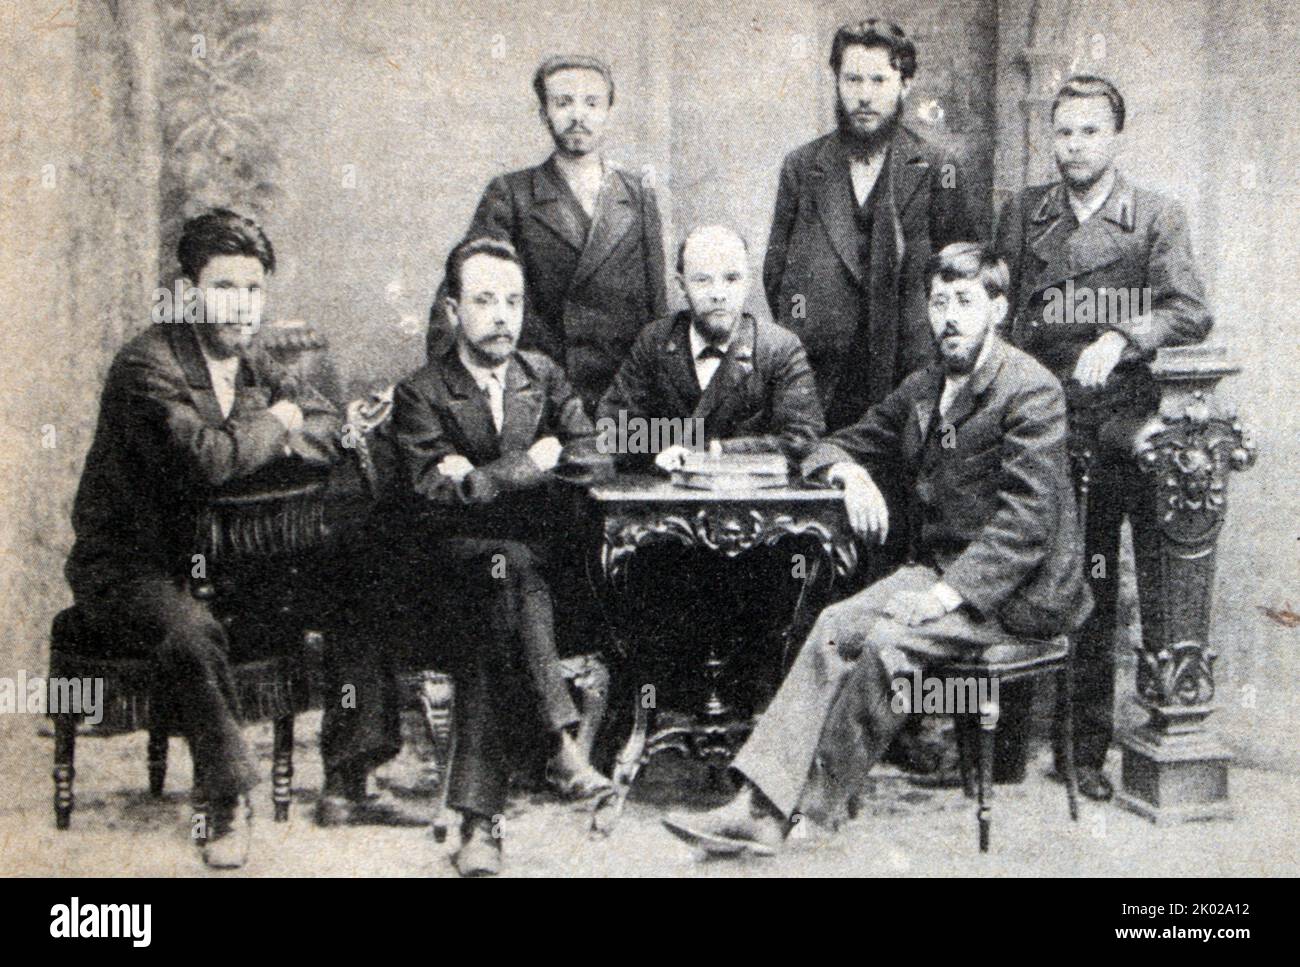 Mitglieder der Union des Kampfes für die Befreiung der Arbeiterklasse (von links nach rechts:) V.V. Starkov, G.M. Krschizhanovsky, A.L. Malchenko, V.I. Lenin, PK Zaporozhets, Yu.O. Martov, A.A. Vaneev. Foto von 1895. Stockfoto